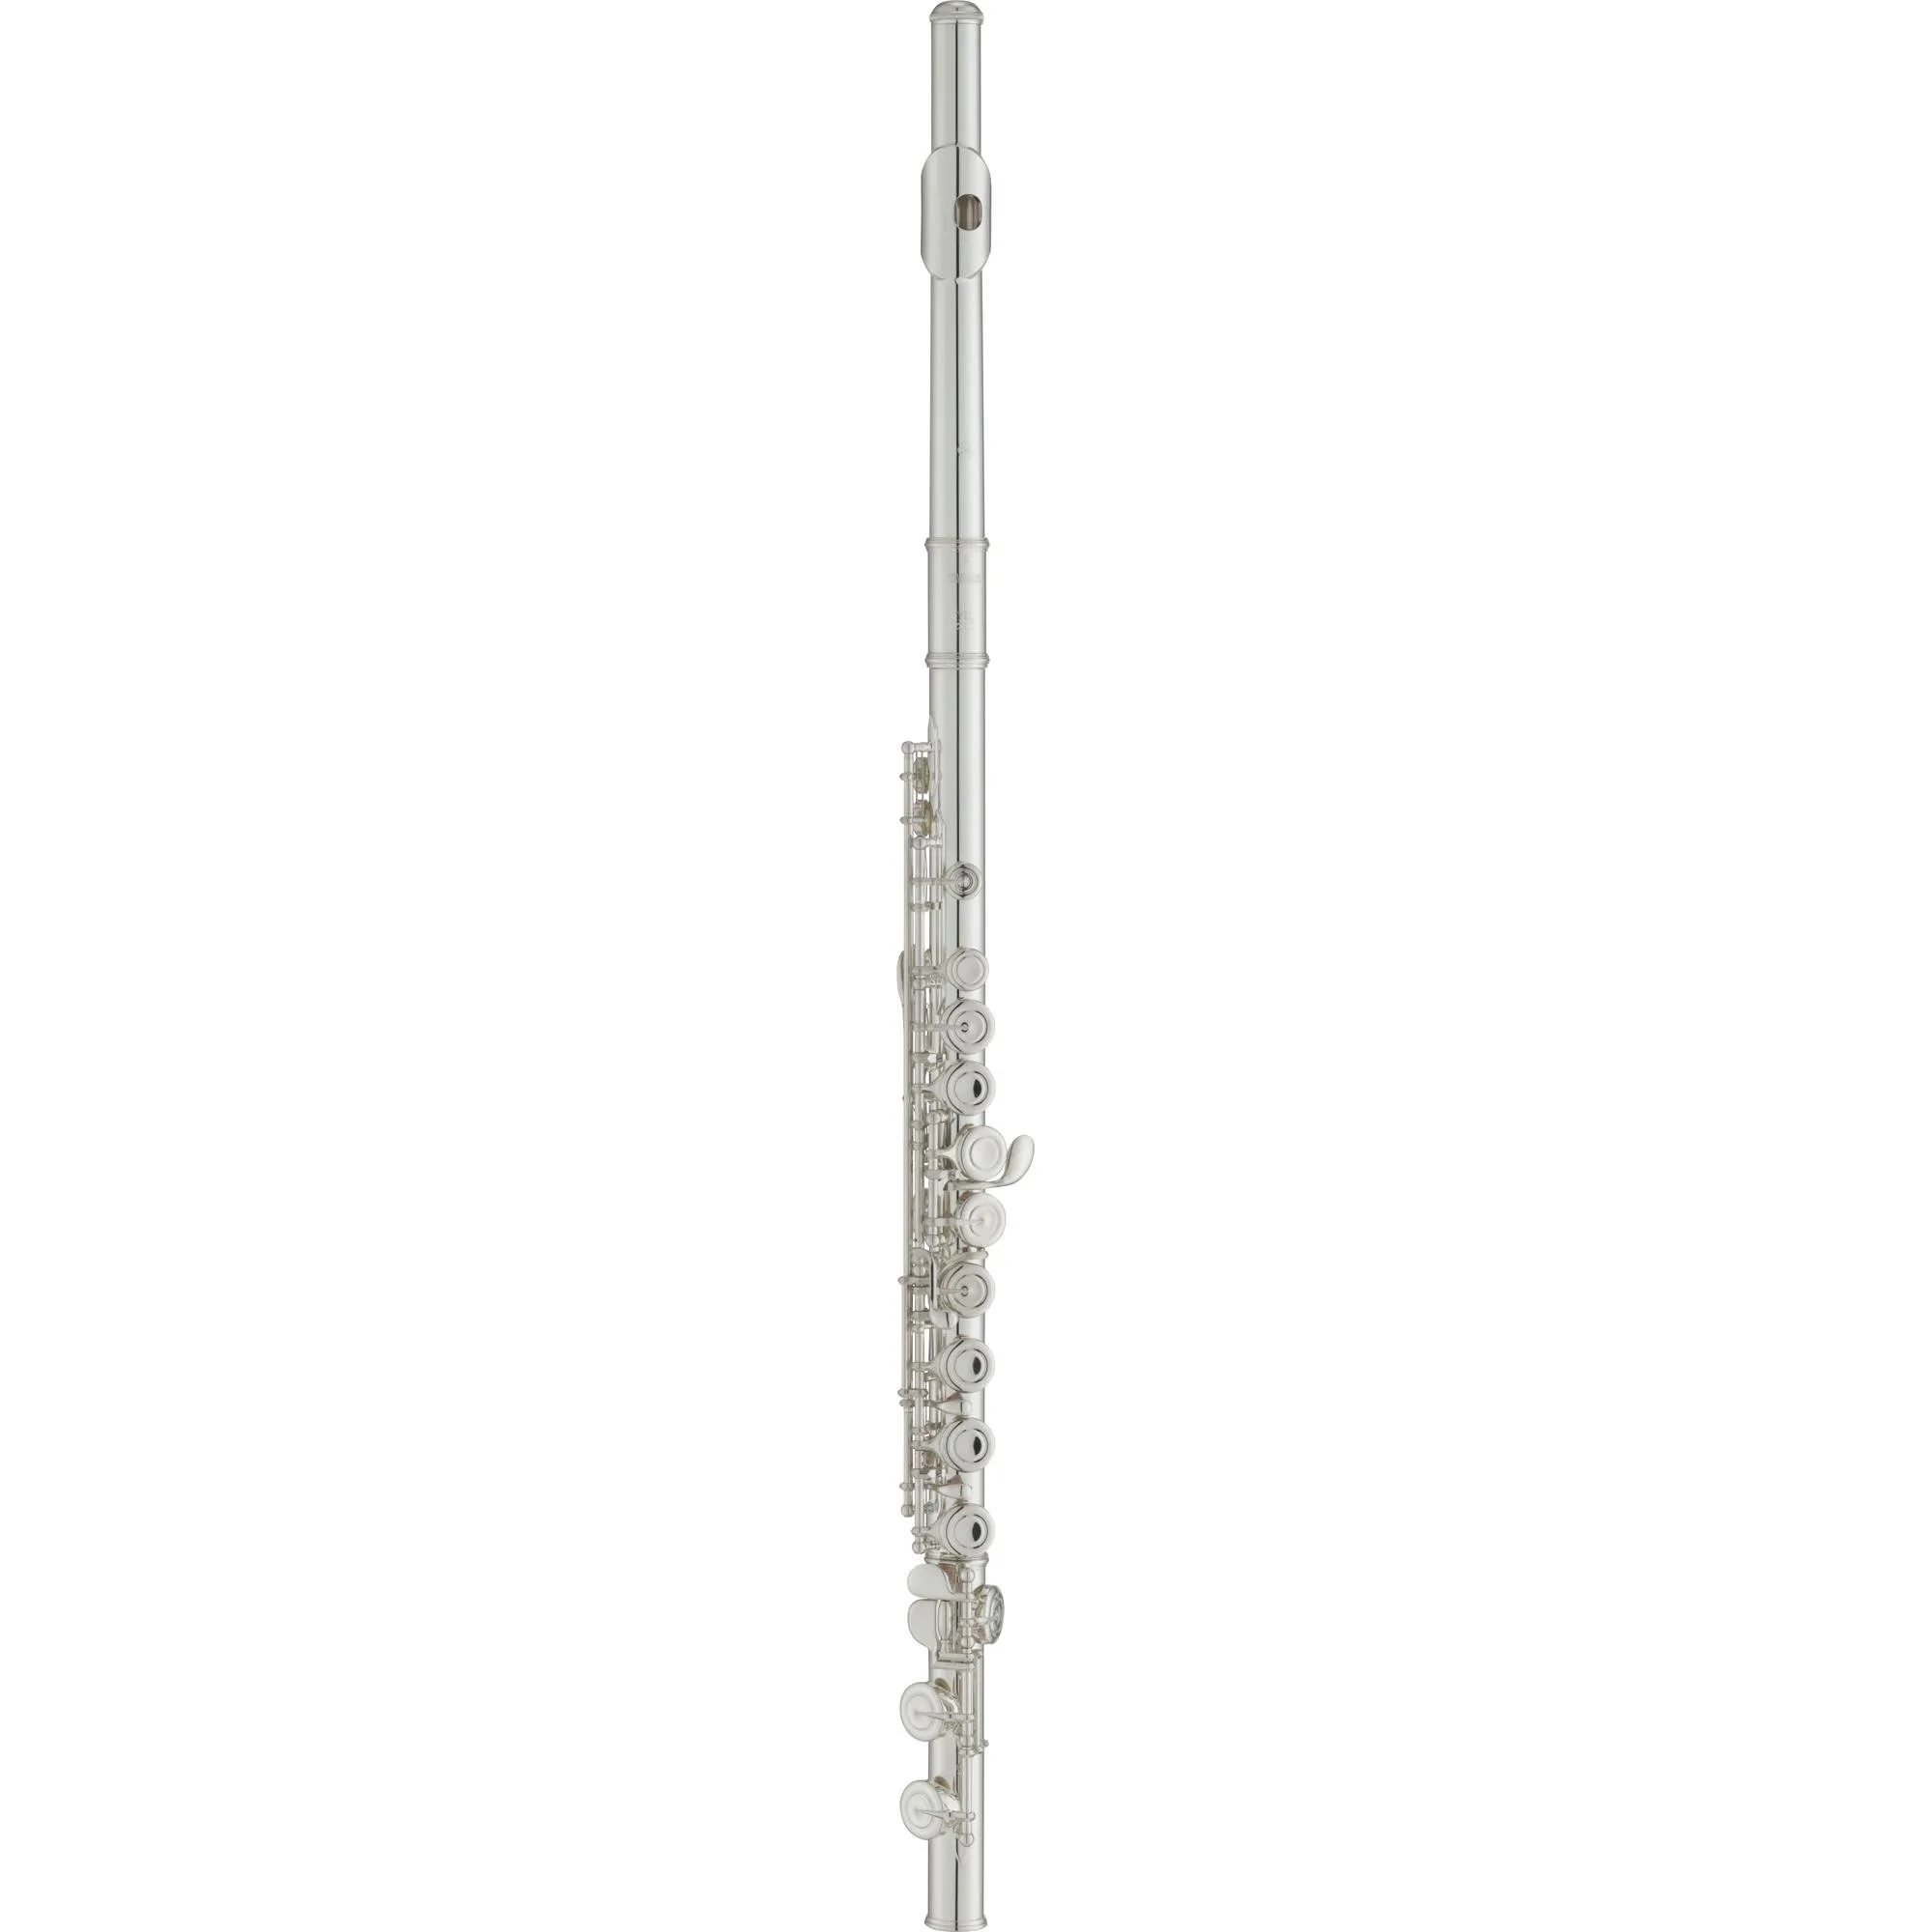 Flauta Yamaha YFL-212 Transversal Soprano C Prata por 5.051,99 à vista no boleto/pix ou parcele em até 12x sem juros. Compre na loja Mundomax!